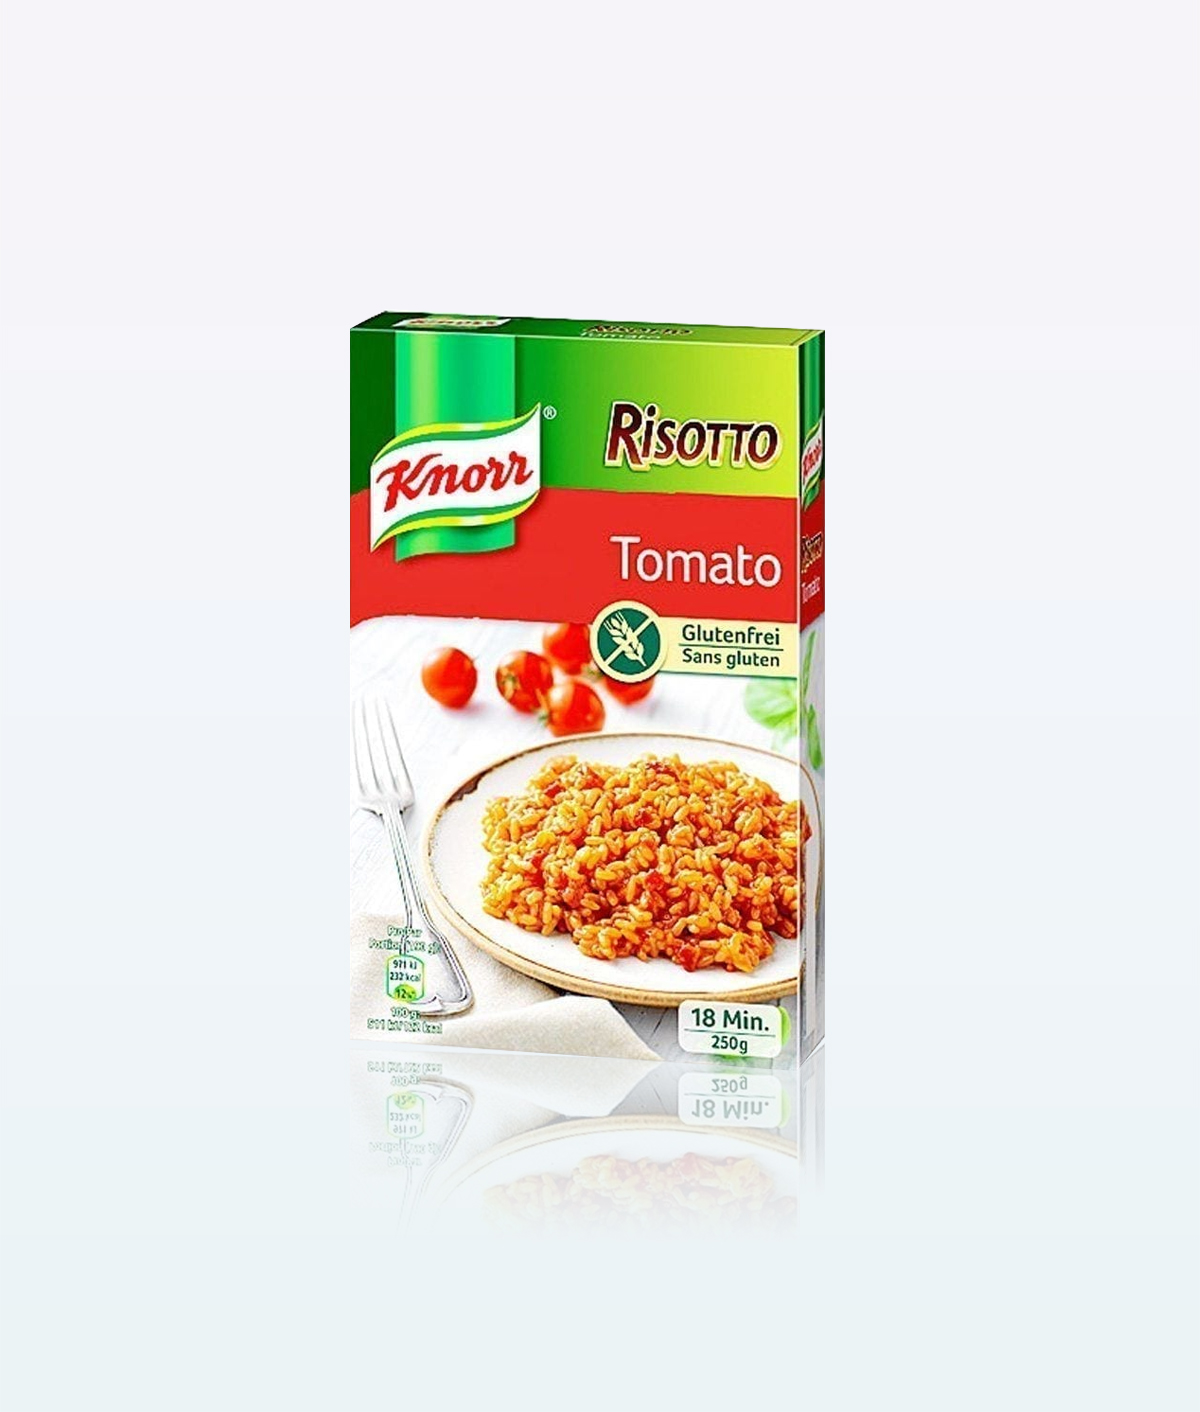 Knorr Risotto Tomato 2